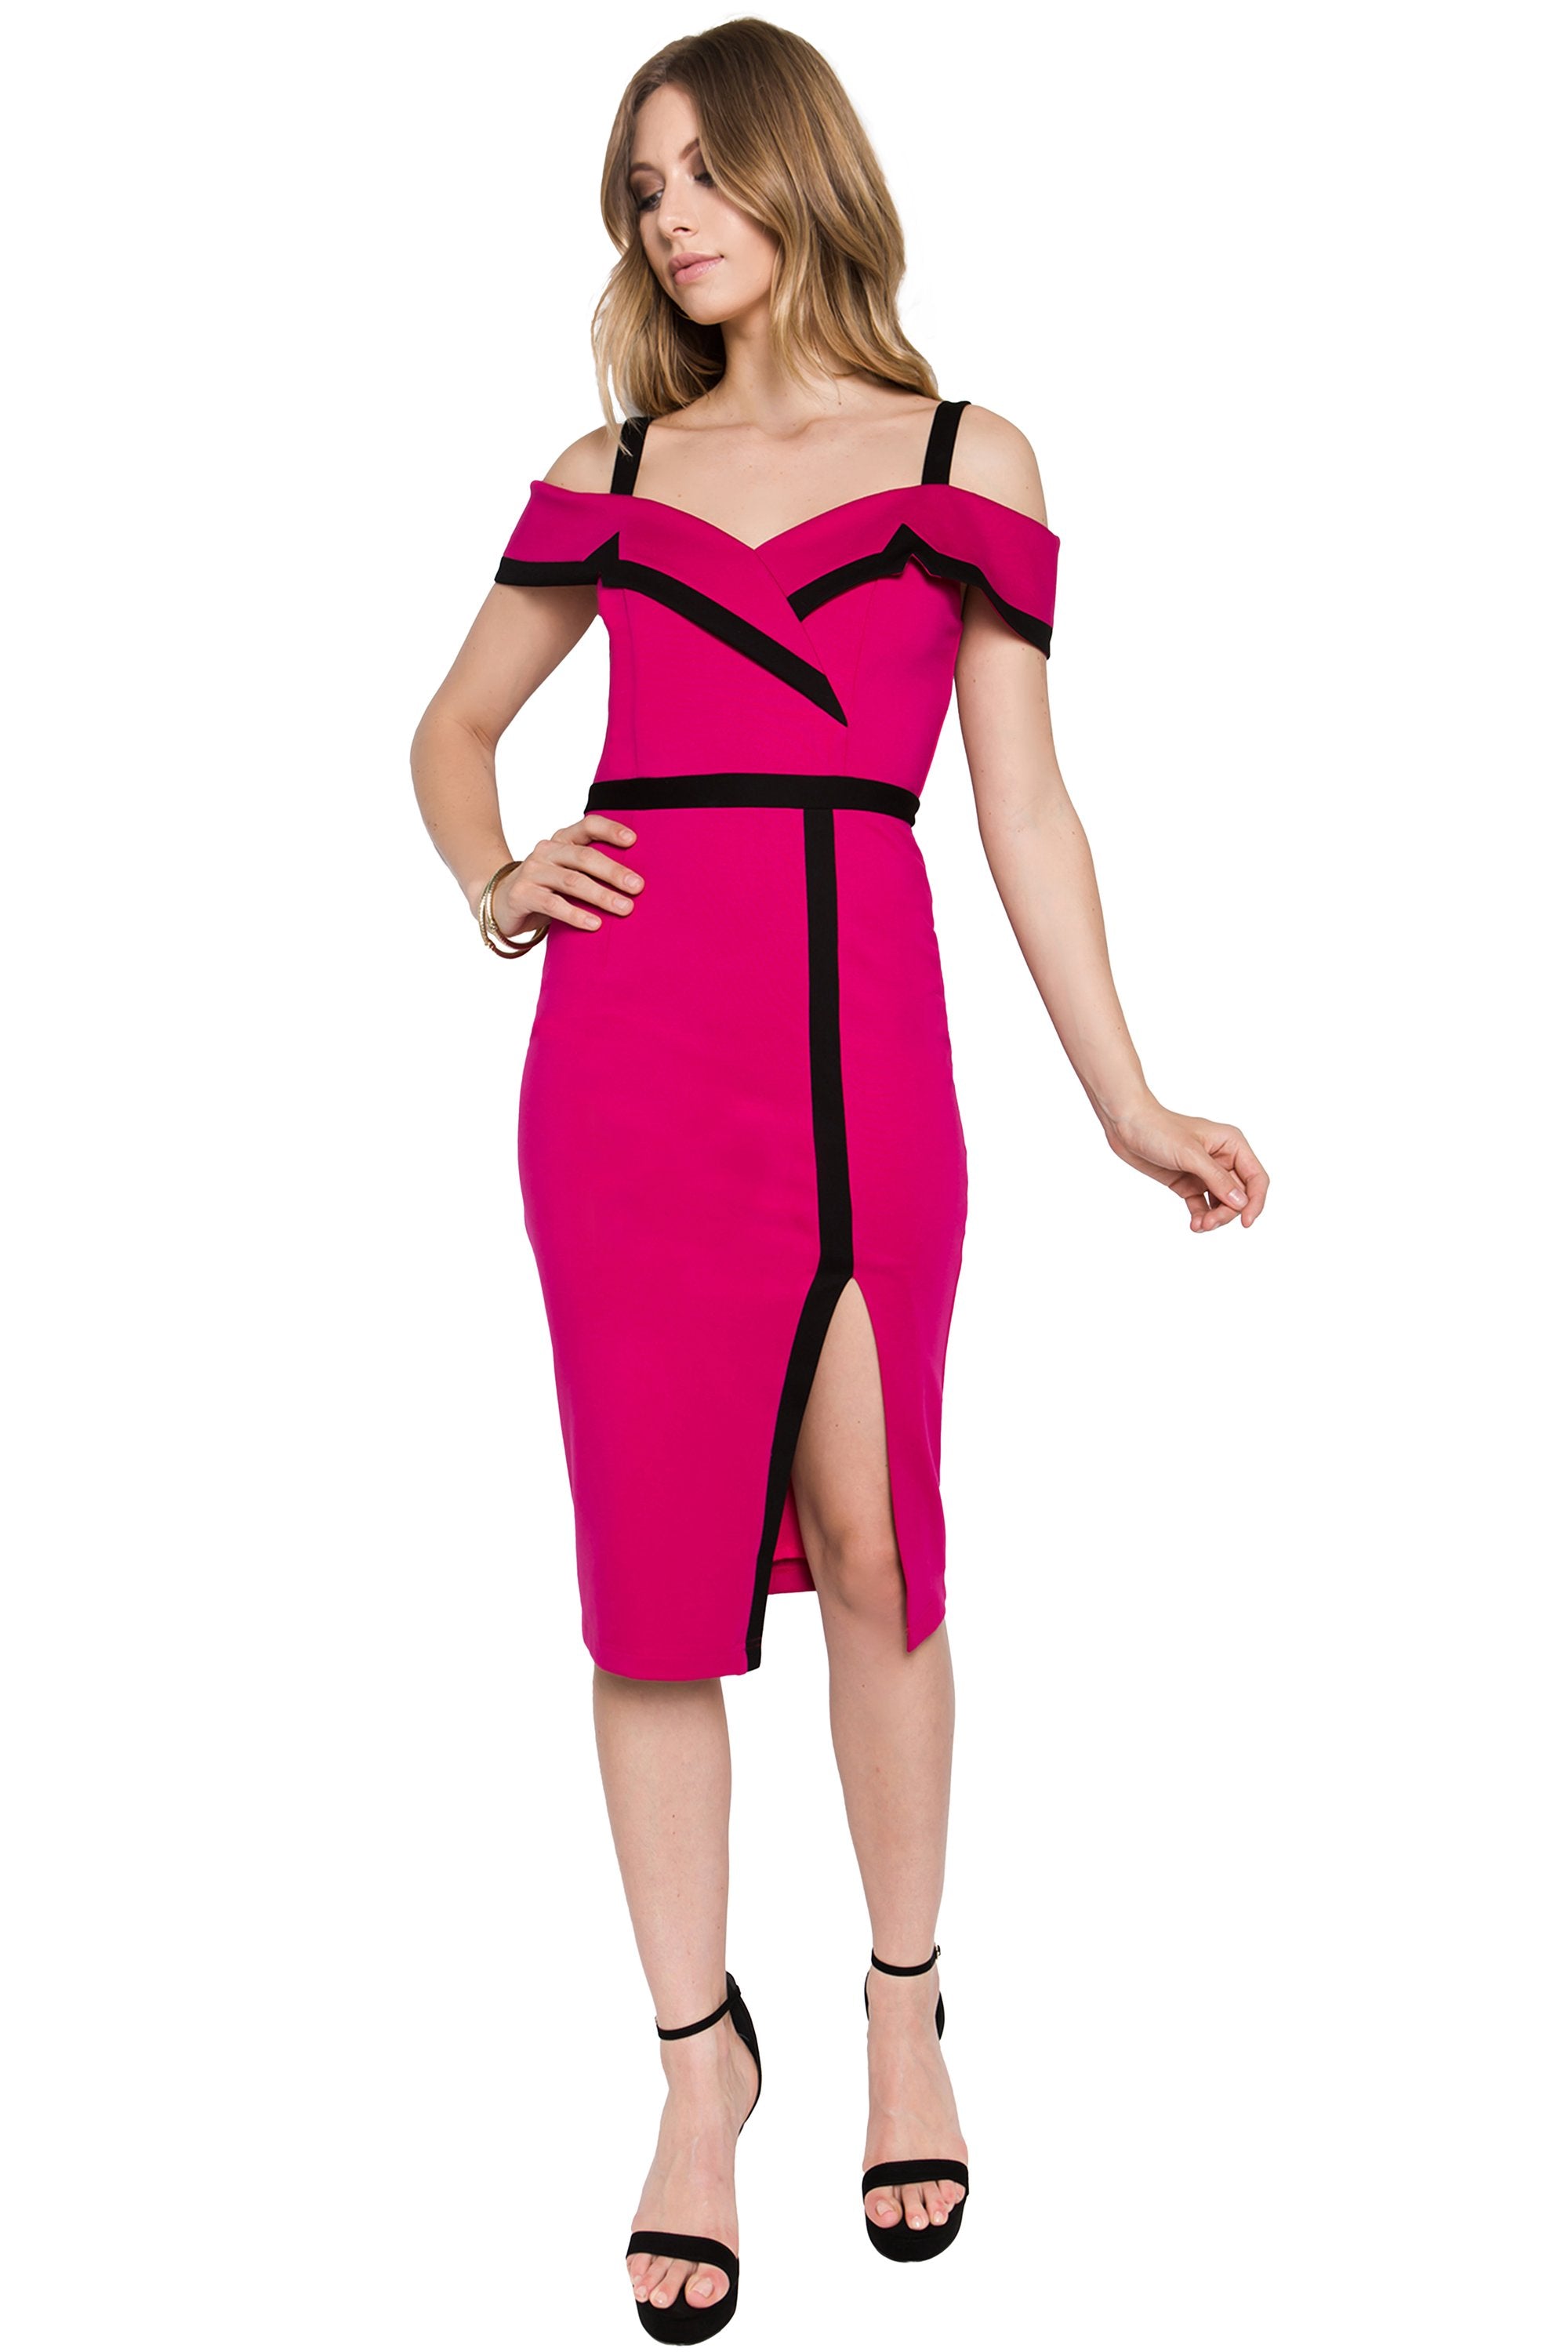 Olivia Dress - Cold shoulder color block dress with thigh high slit